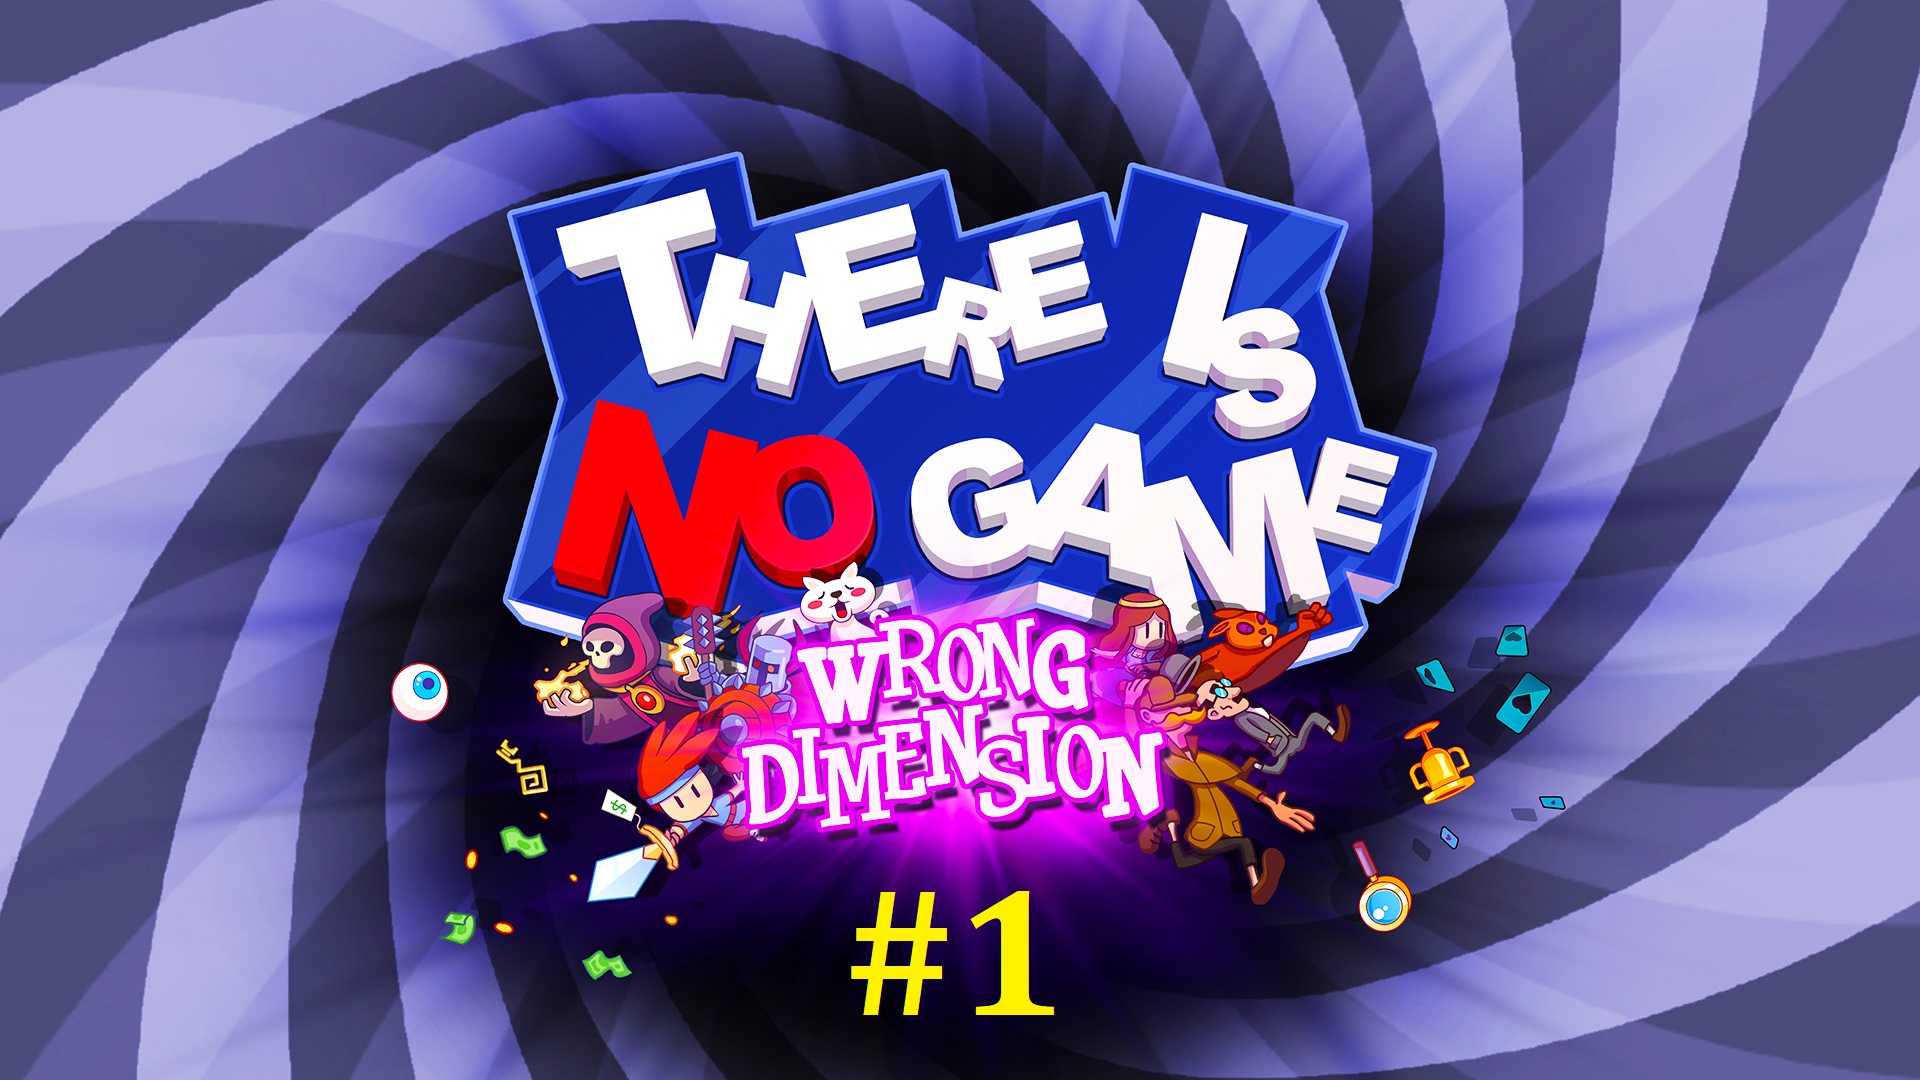 There is no game wrong. There is no game: wrong Dimension. There is no game - wrong Dimension код.